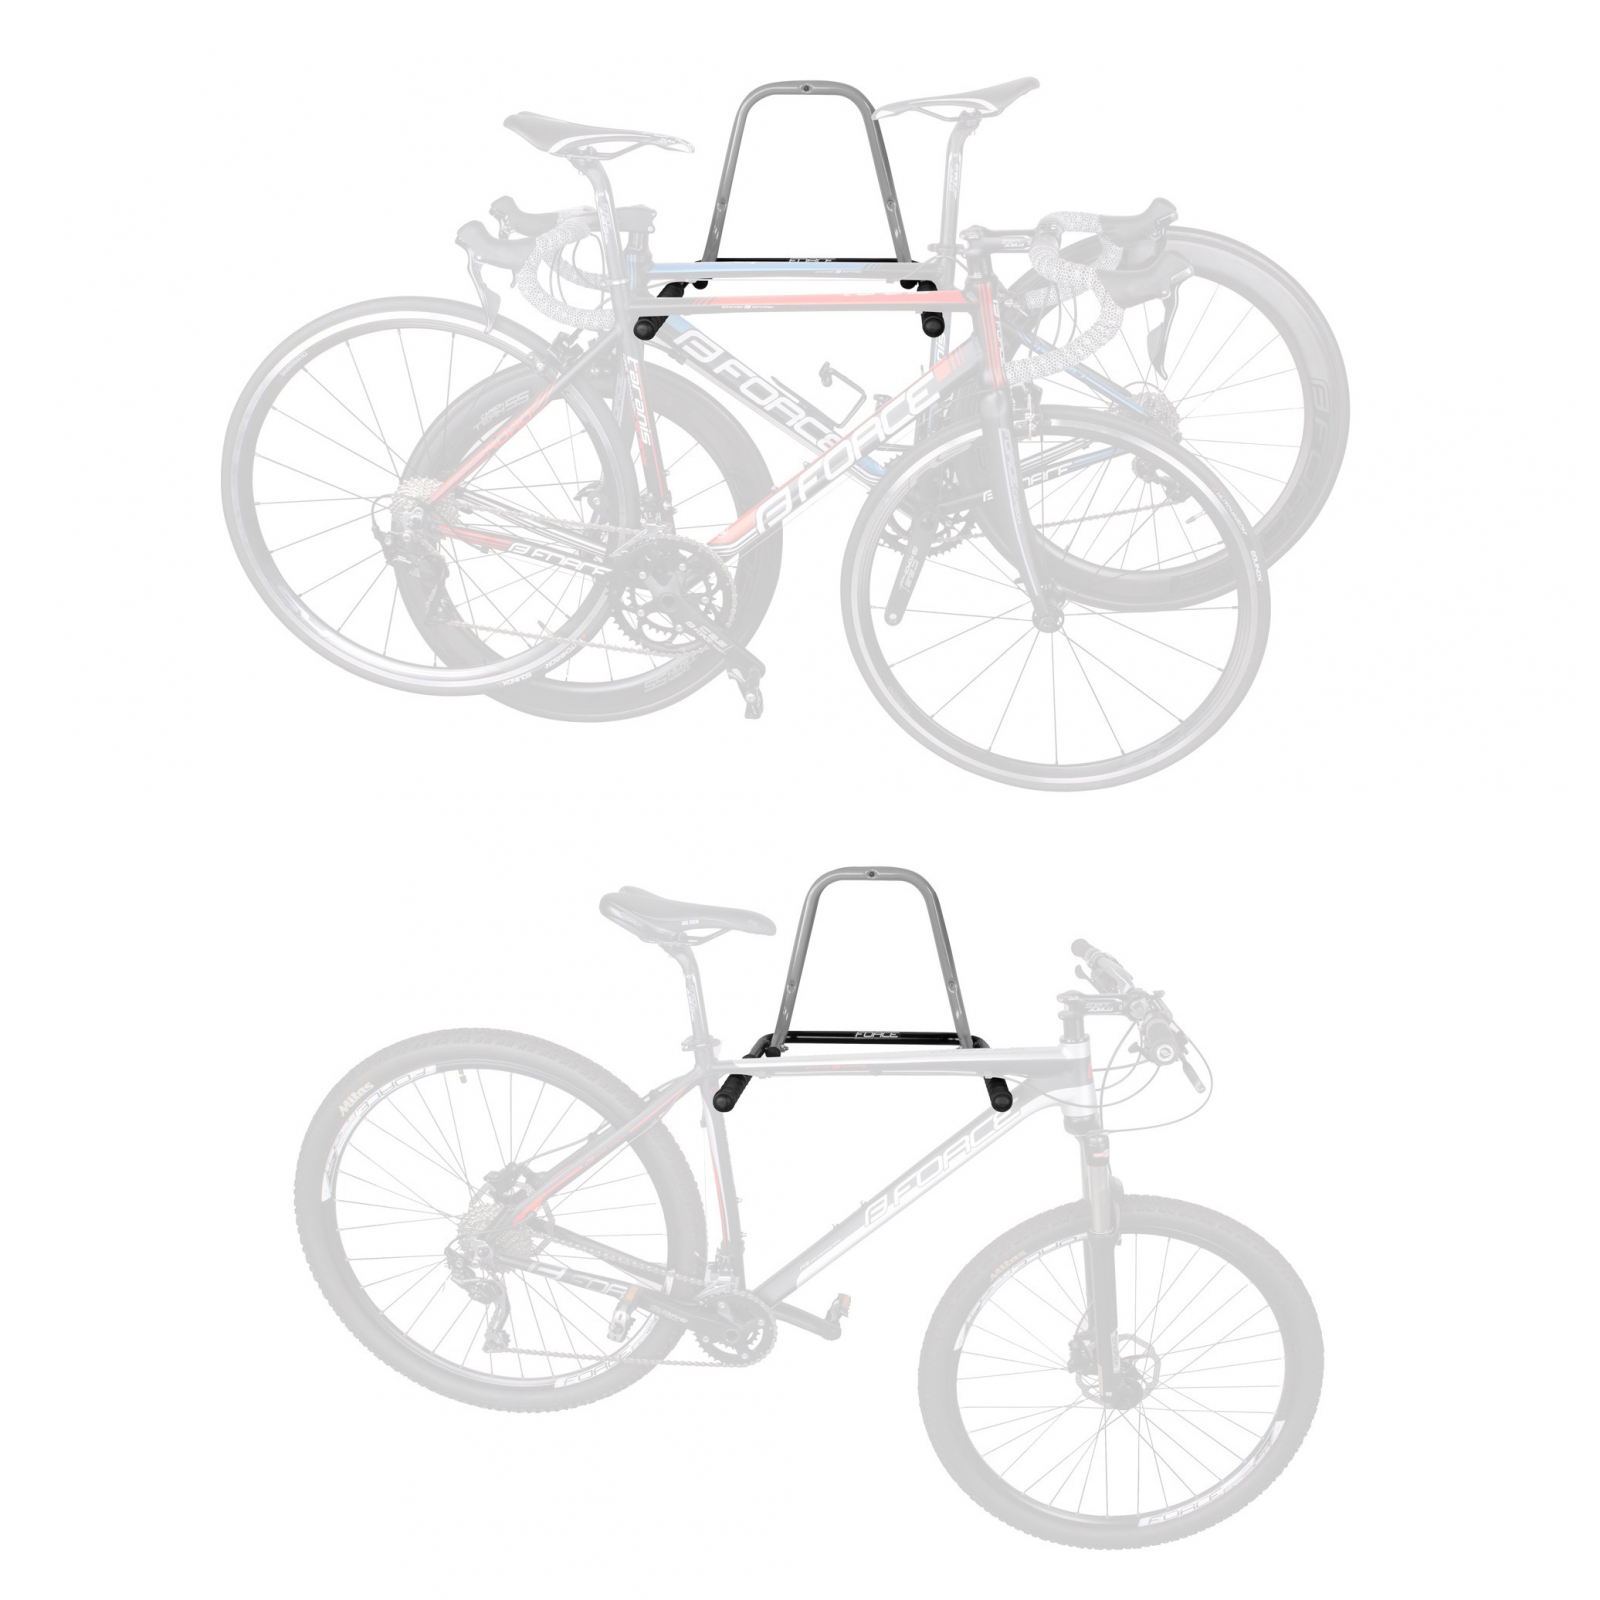 Centralize clockwise graduate Suport perete pentru bicicleta pliabil gri/negru